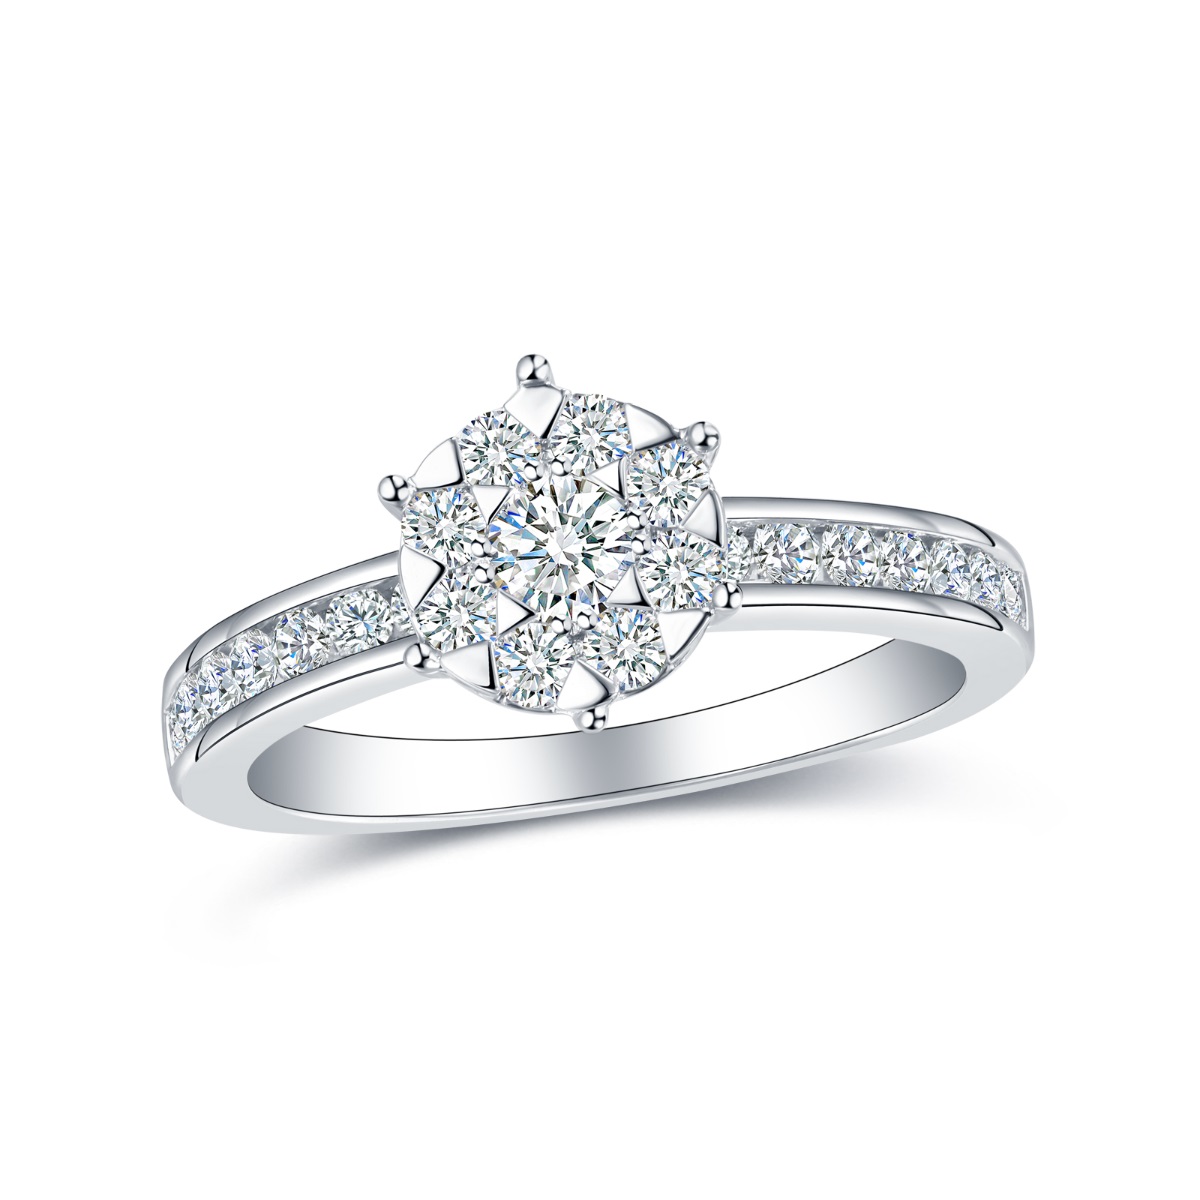 R35539WHT – 18K White Gold Diamond Ring, 0.77 TCW